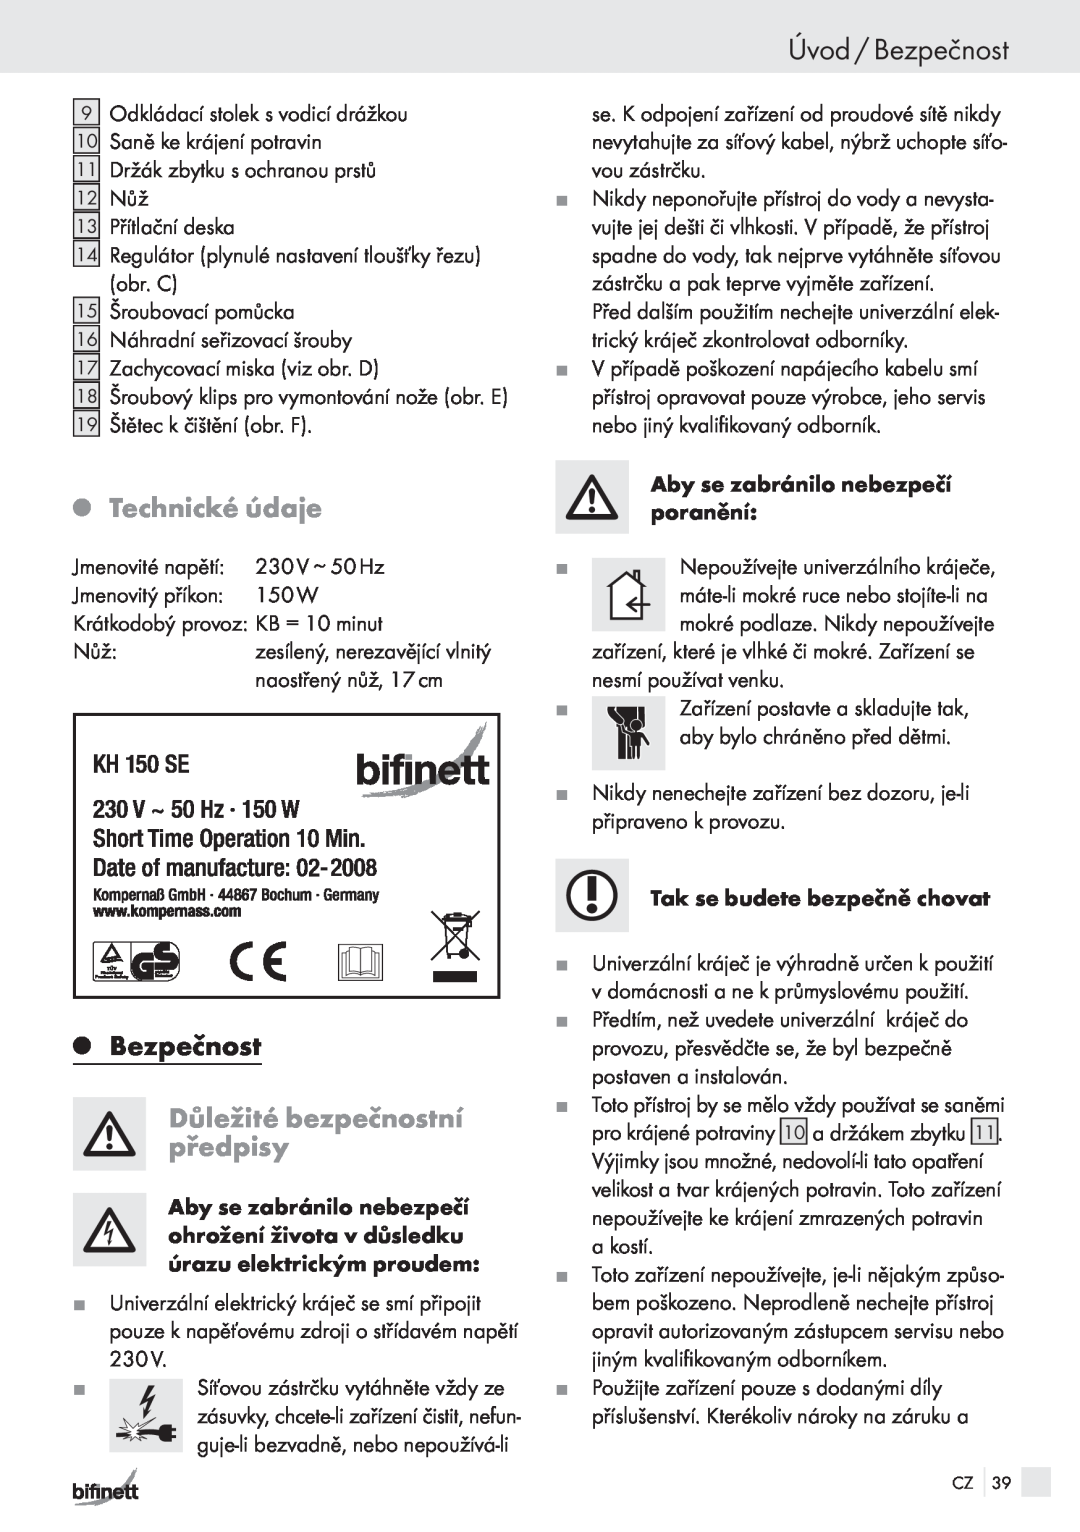 Bifinett KH 150 manual Úvod / Bezpečnost, QTechnické údaje, QBezpečnost, Důležité bezpečnostní předpisy 